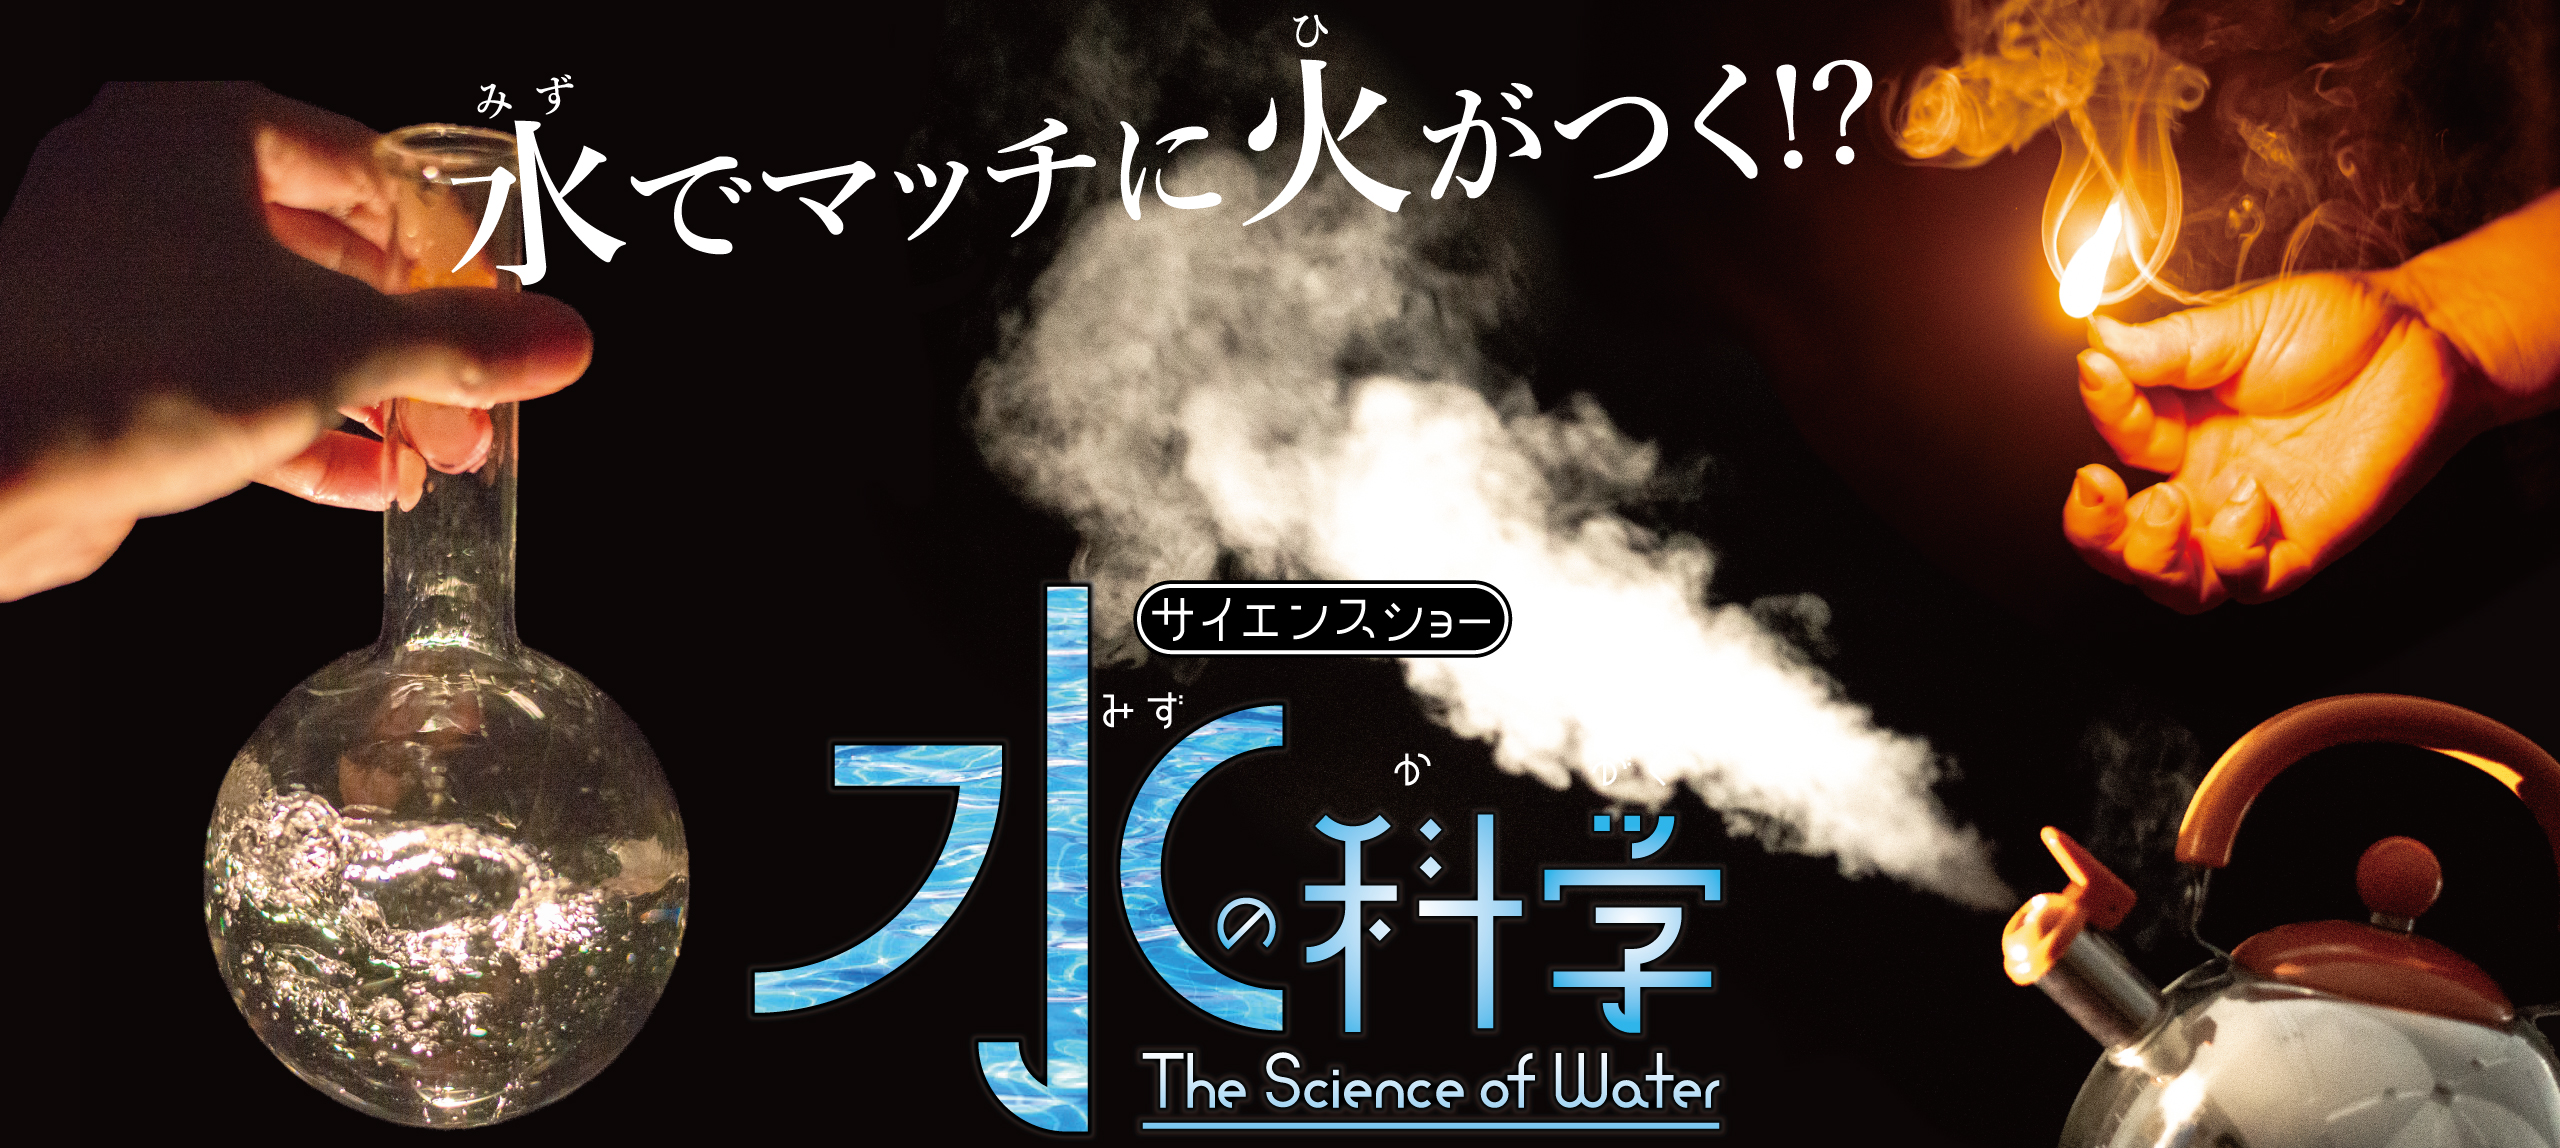 サイエンスショー「水の科学」